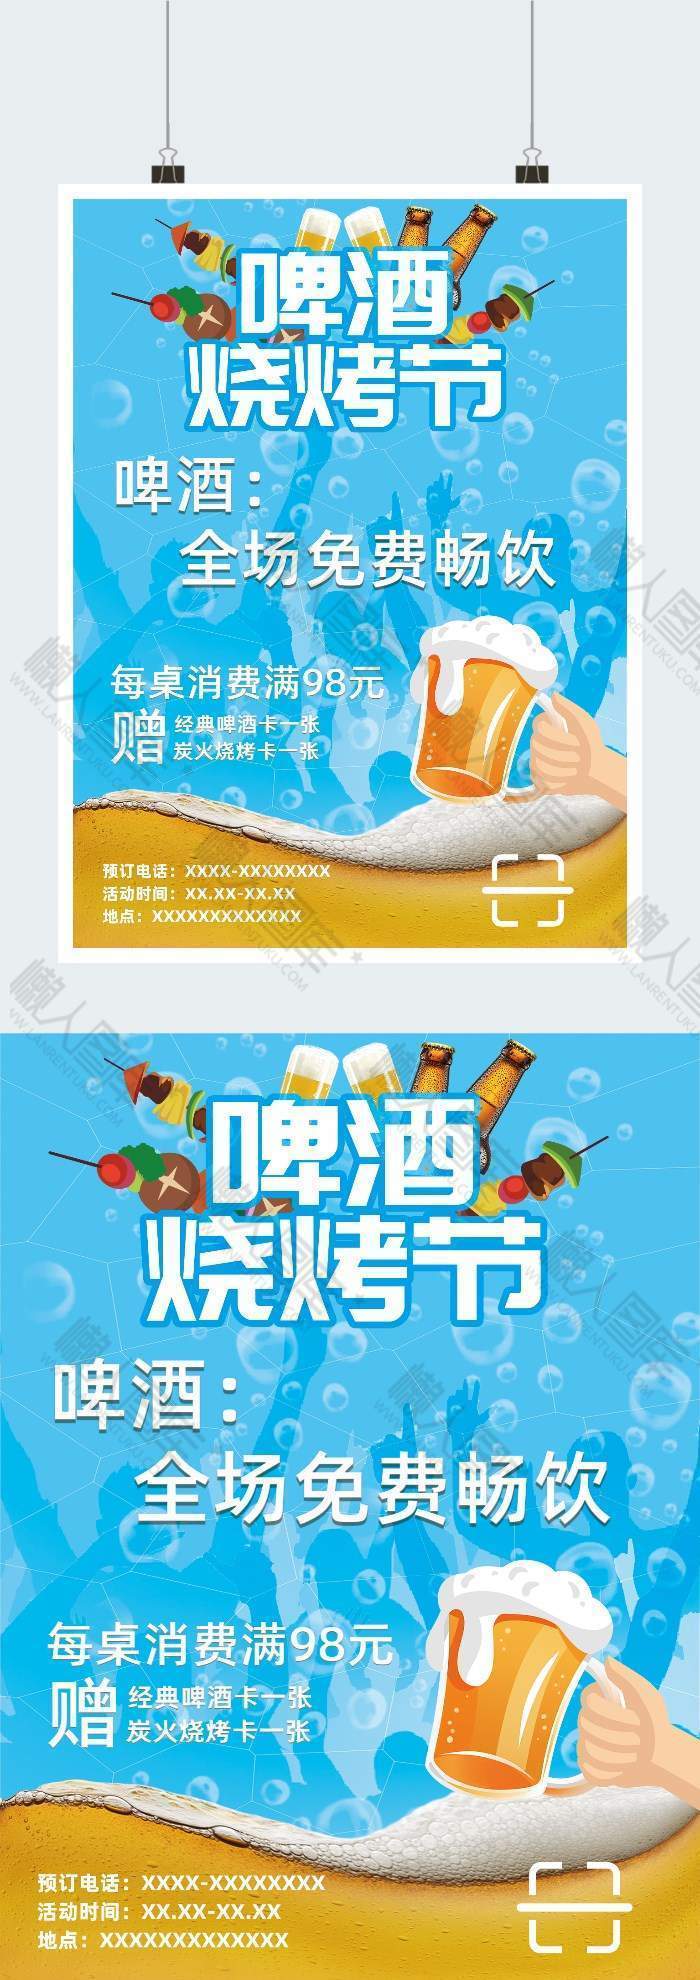 蓝色啤酒烧烤节广告平面海报